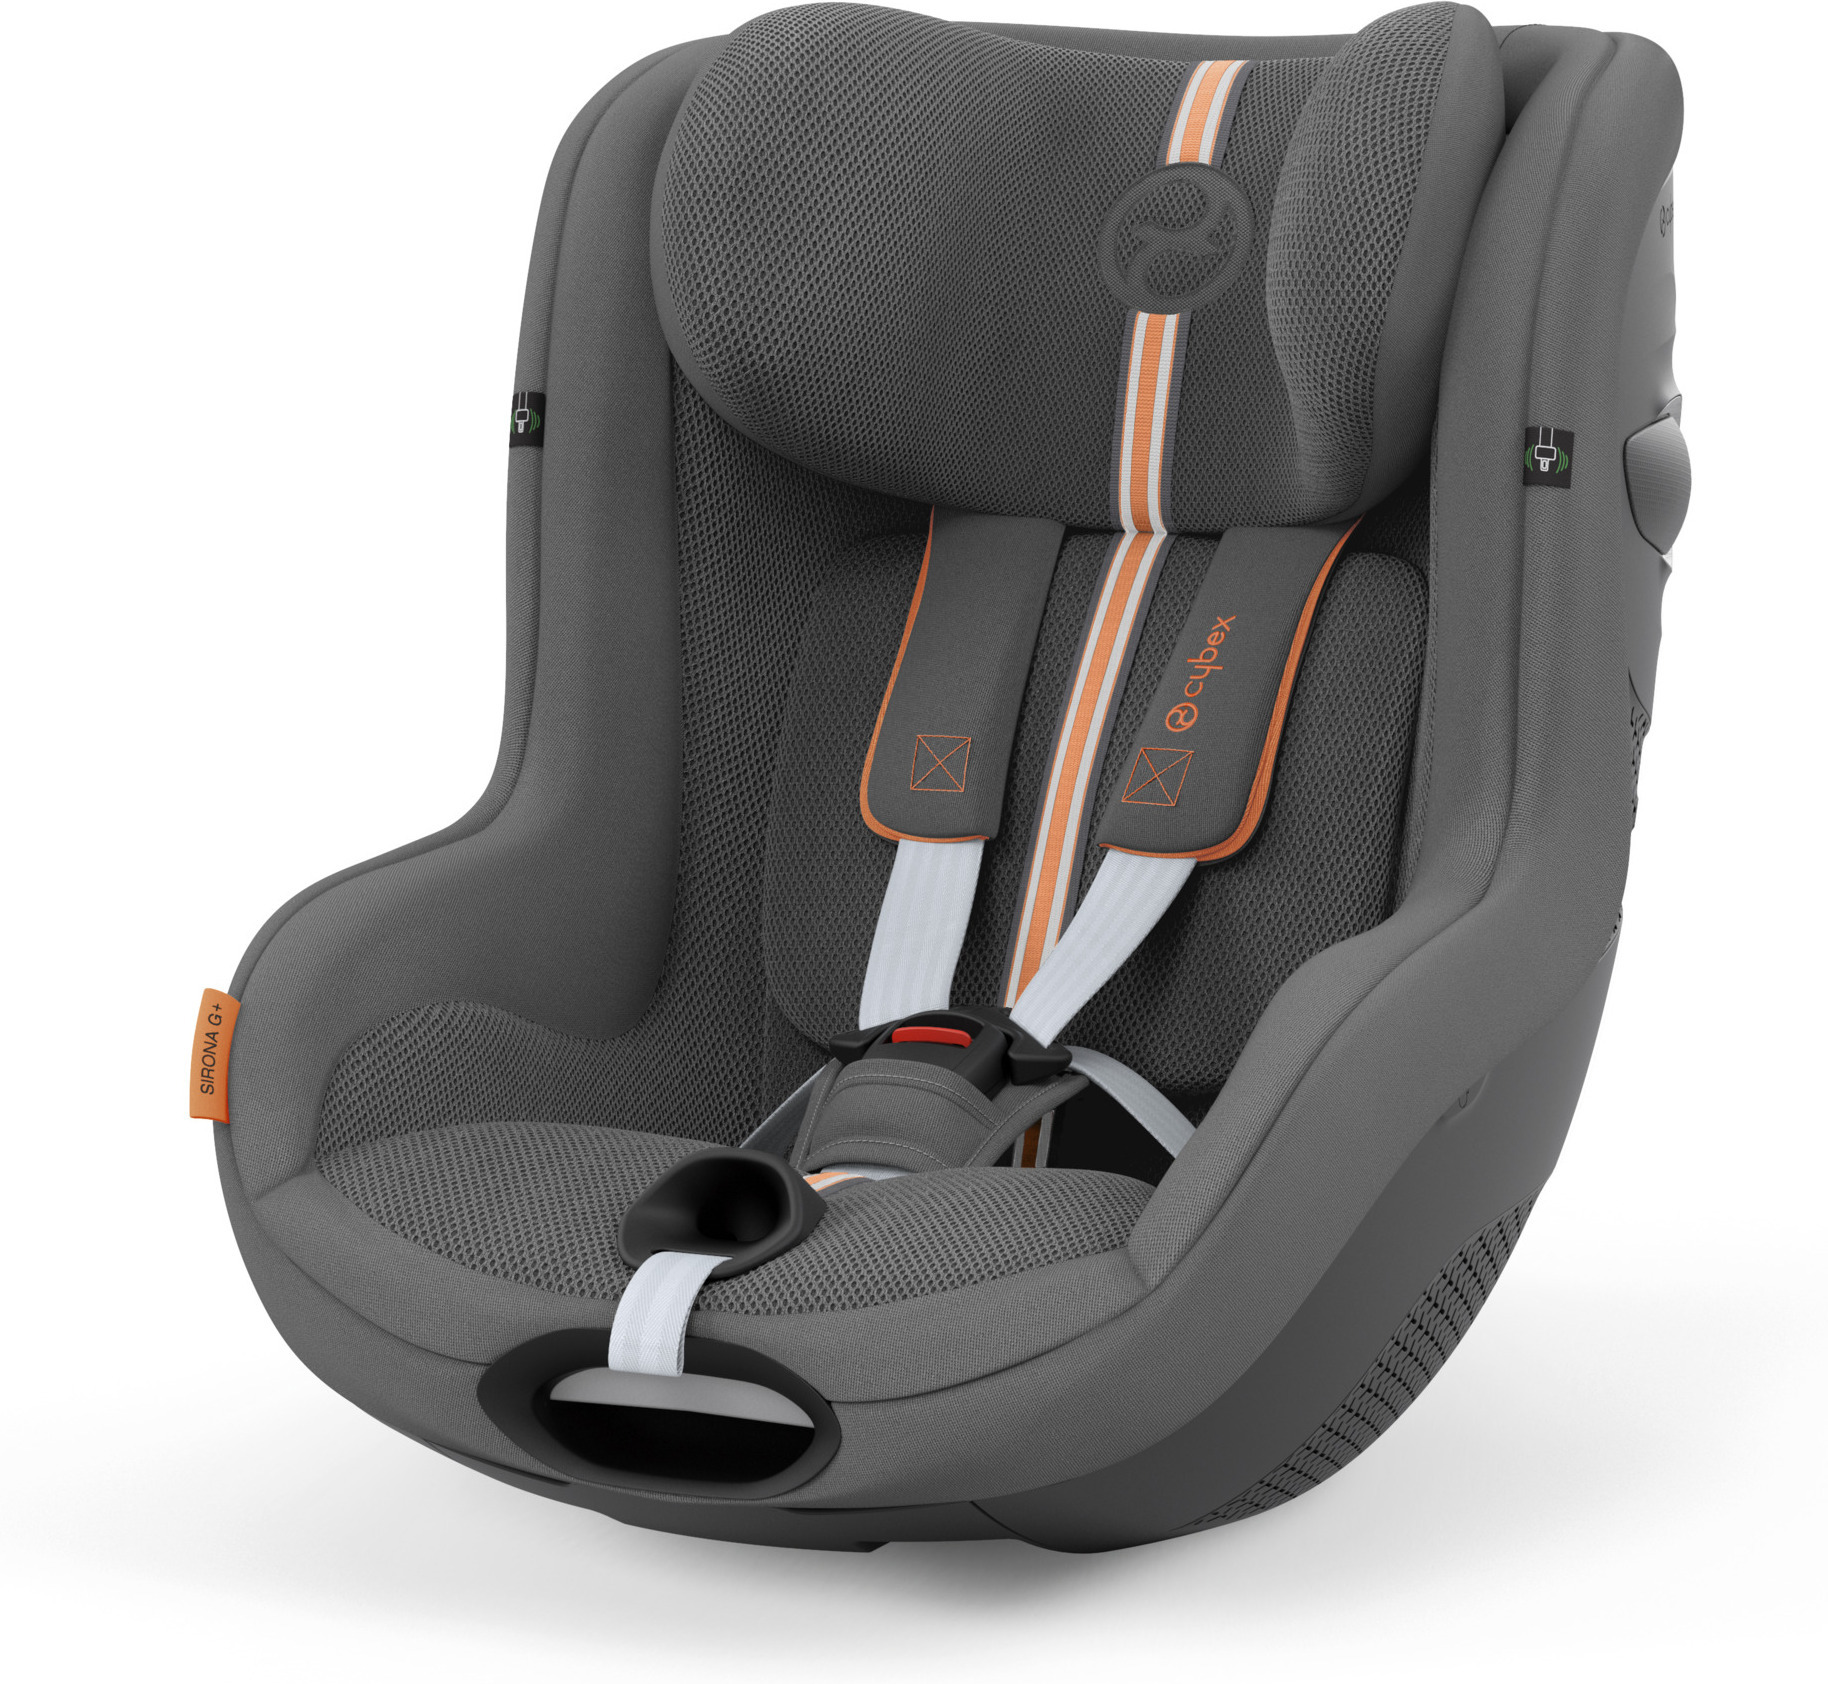 Cybex® Car Seat Pallas G i-Size (76-150cm) Seashell Beige/Light Beige